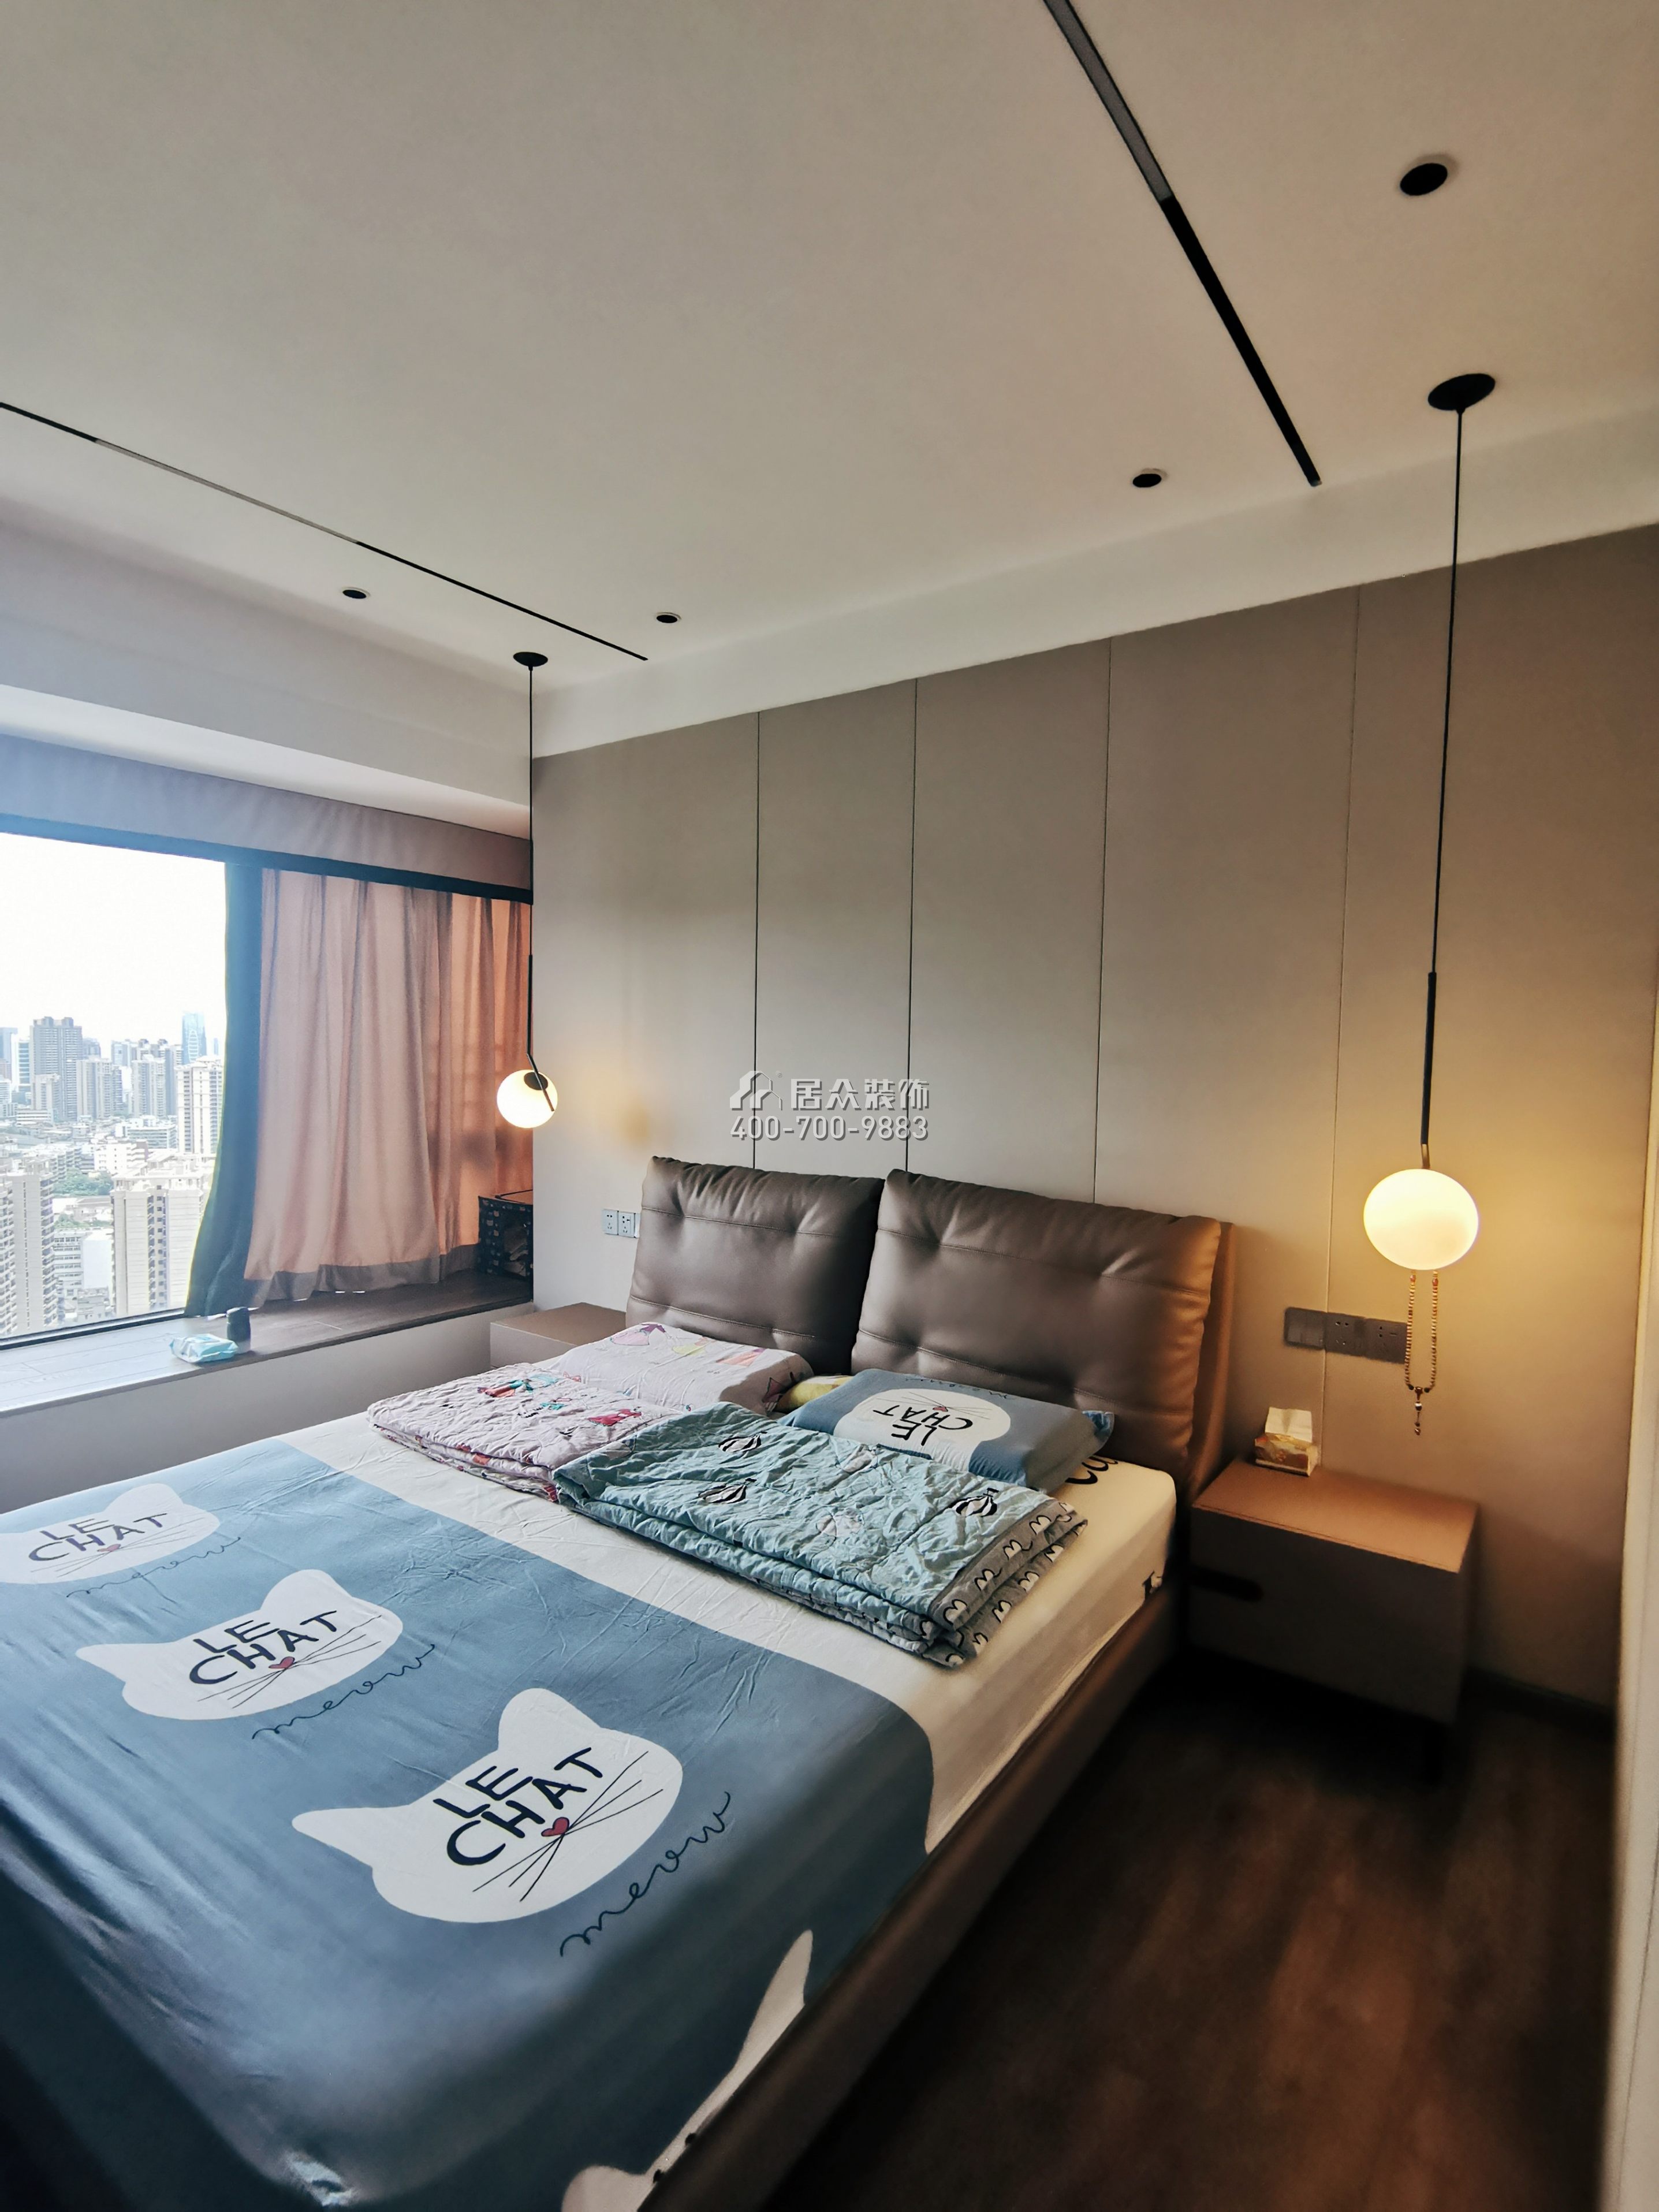 锦园170平方米现代简约风格复式户型卧室装修效果图